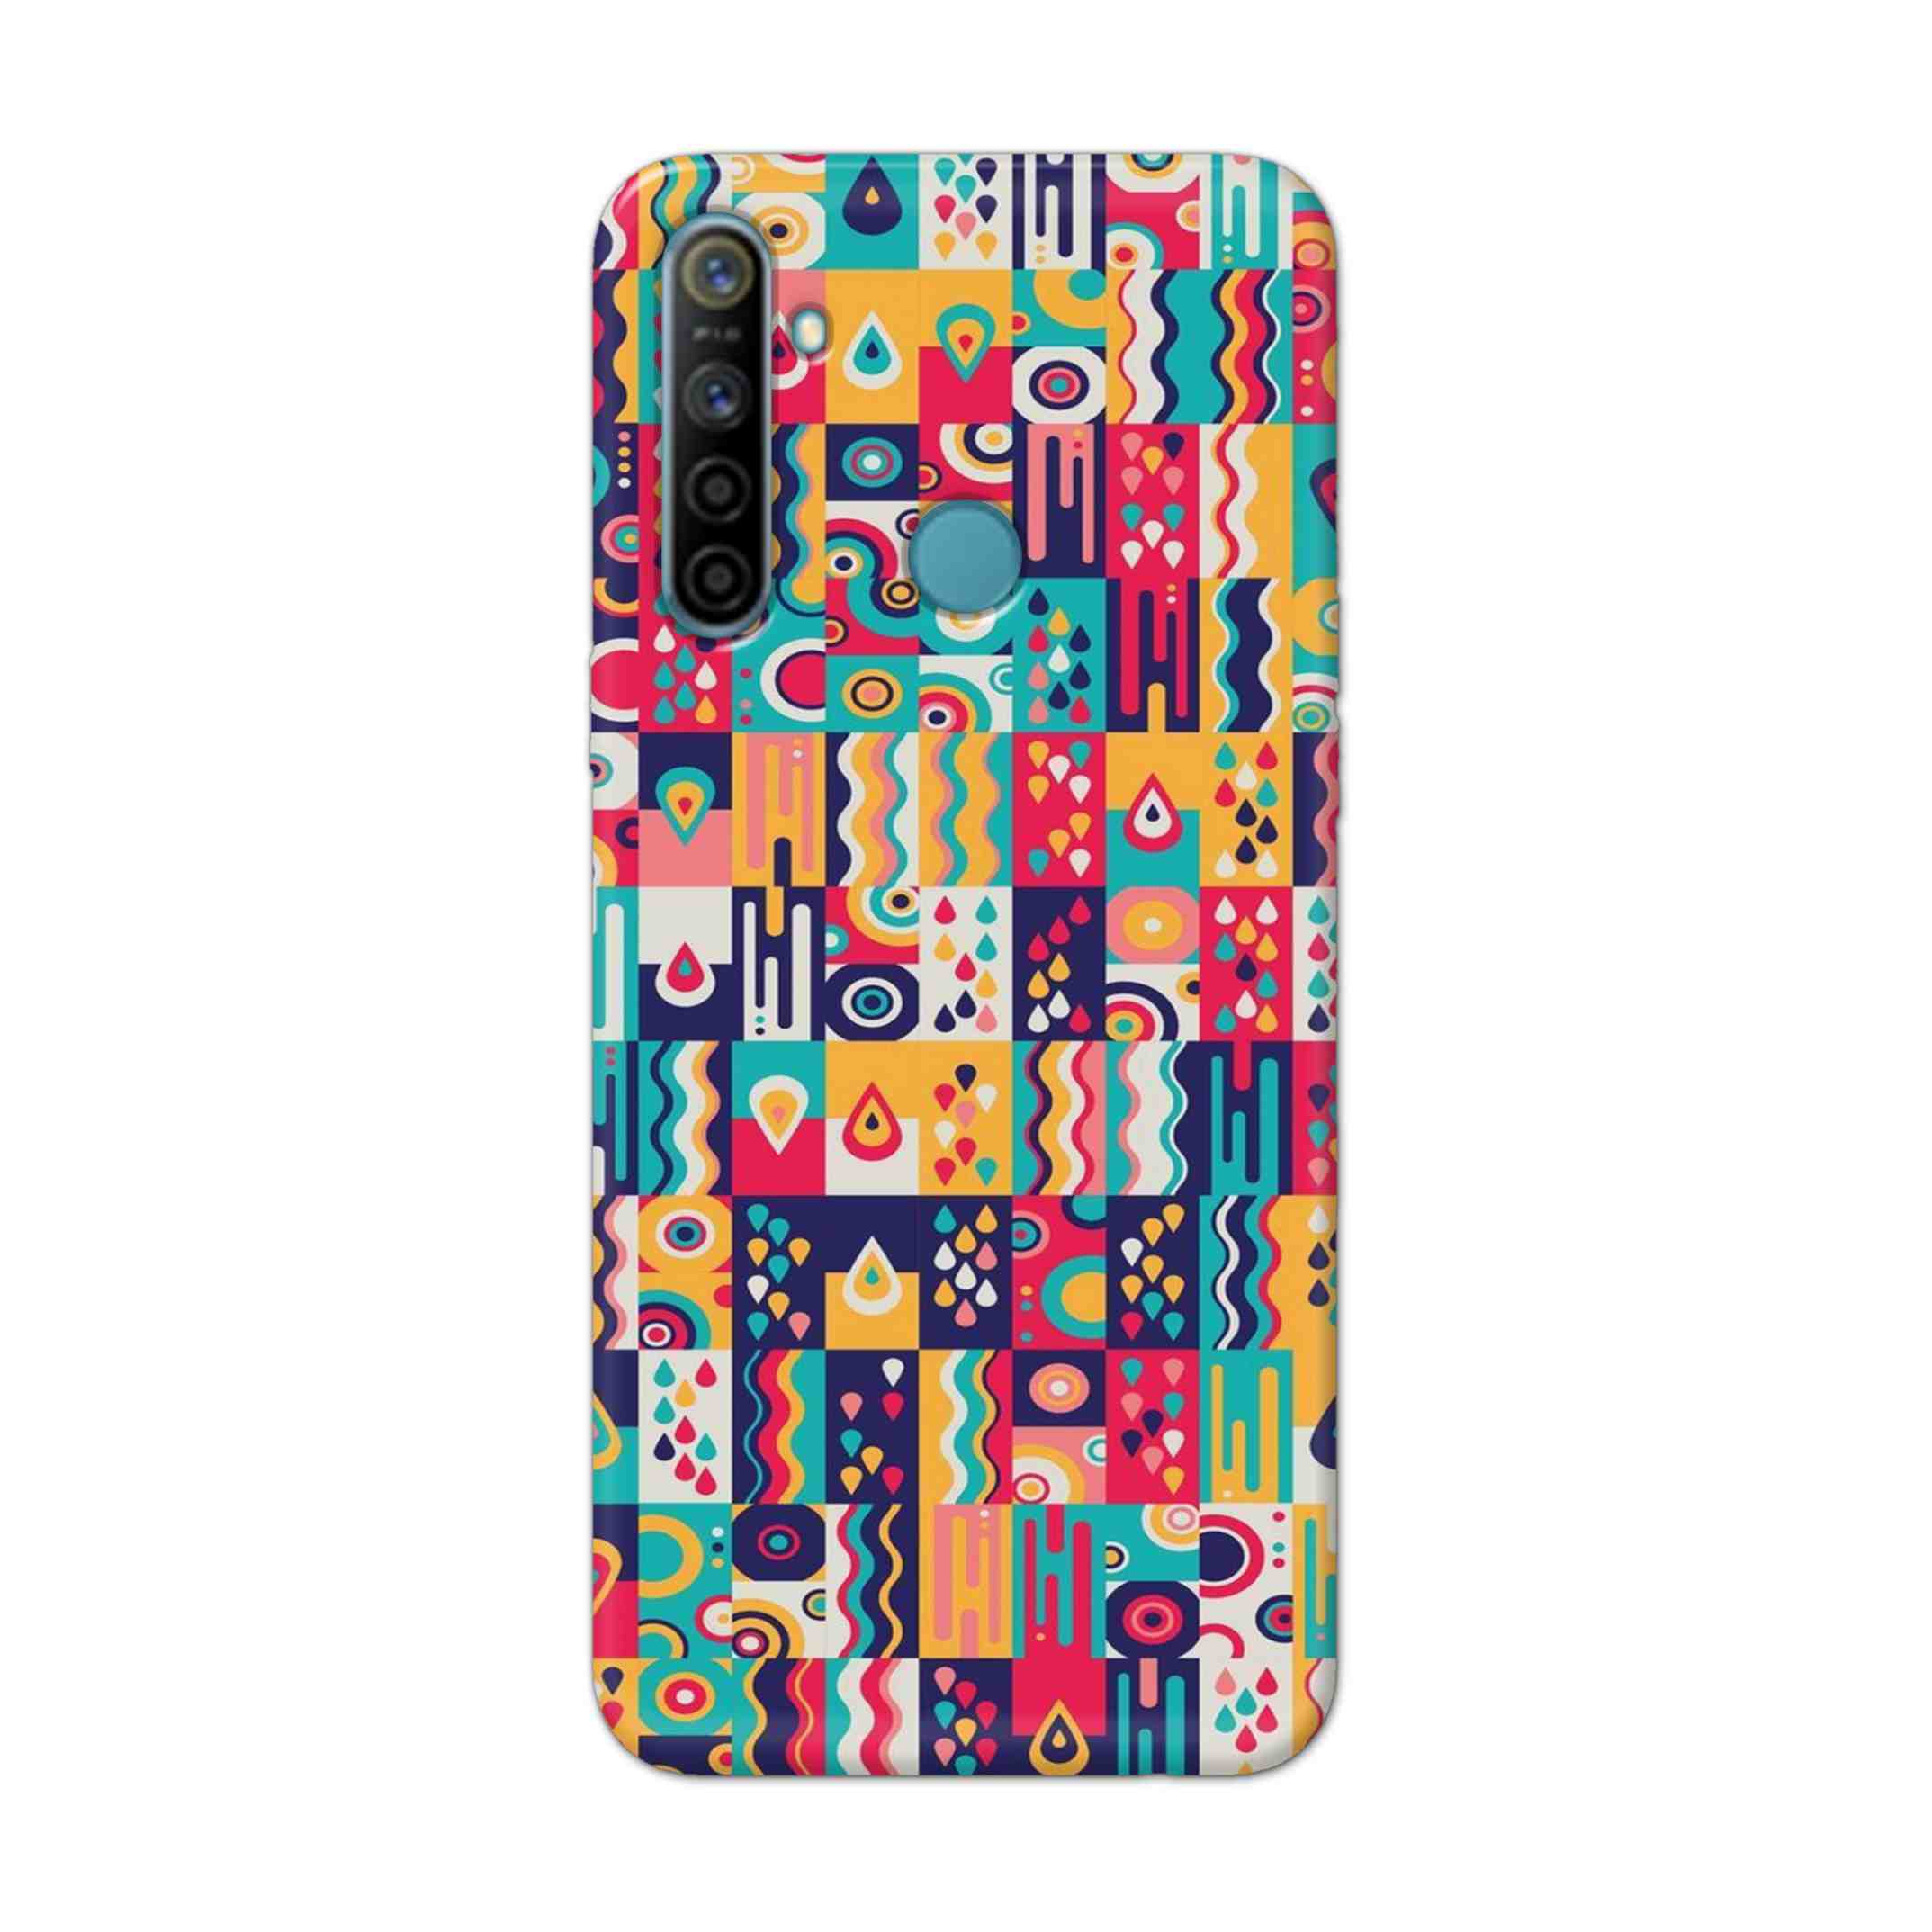 Buy Art Hard Back Mobile Phone Case Cover For Realme 5i Online